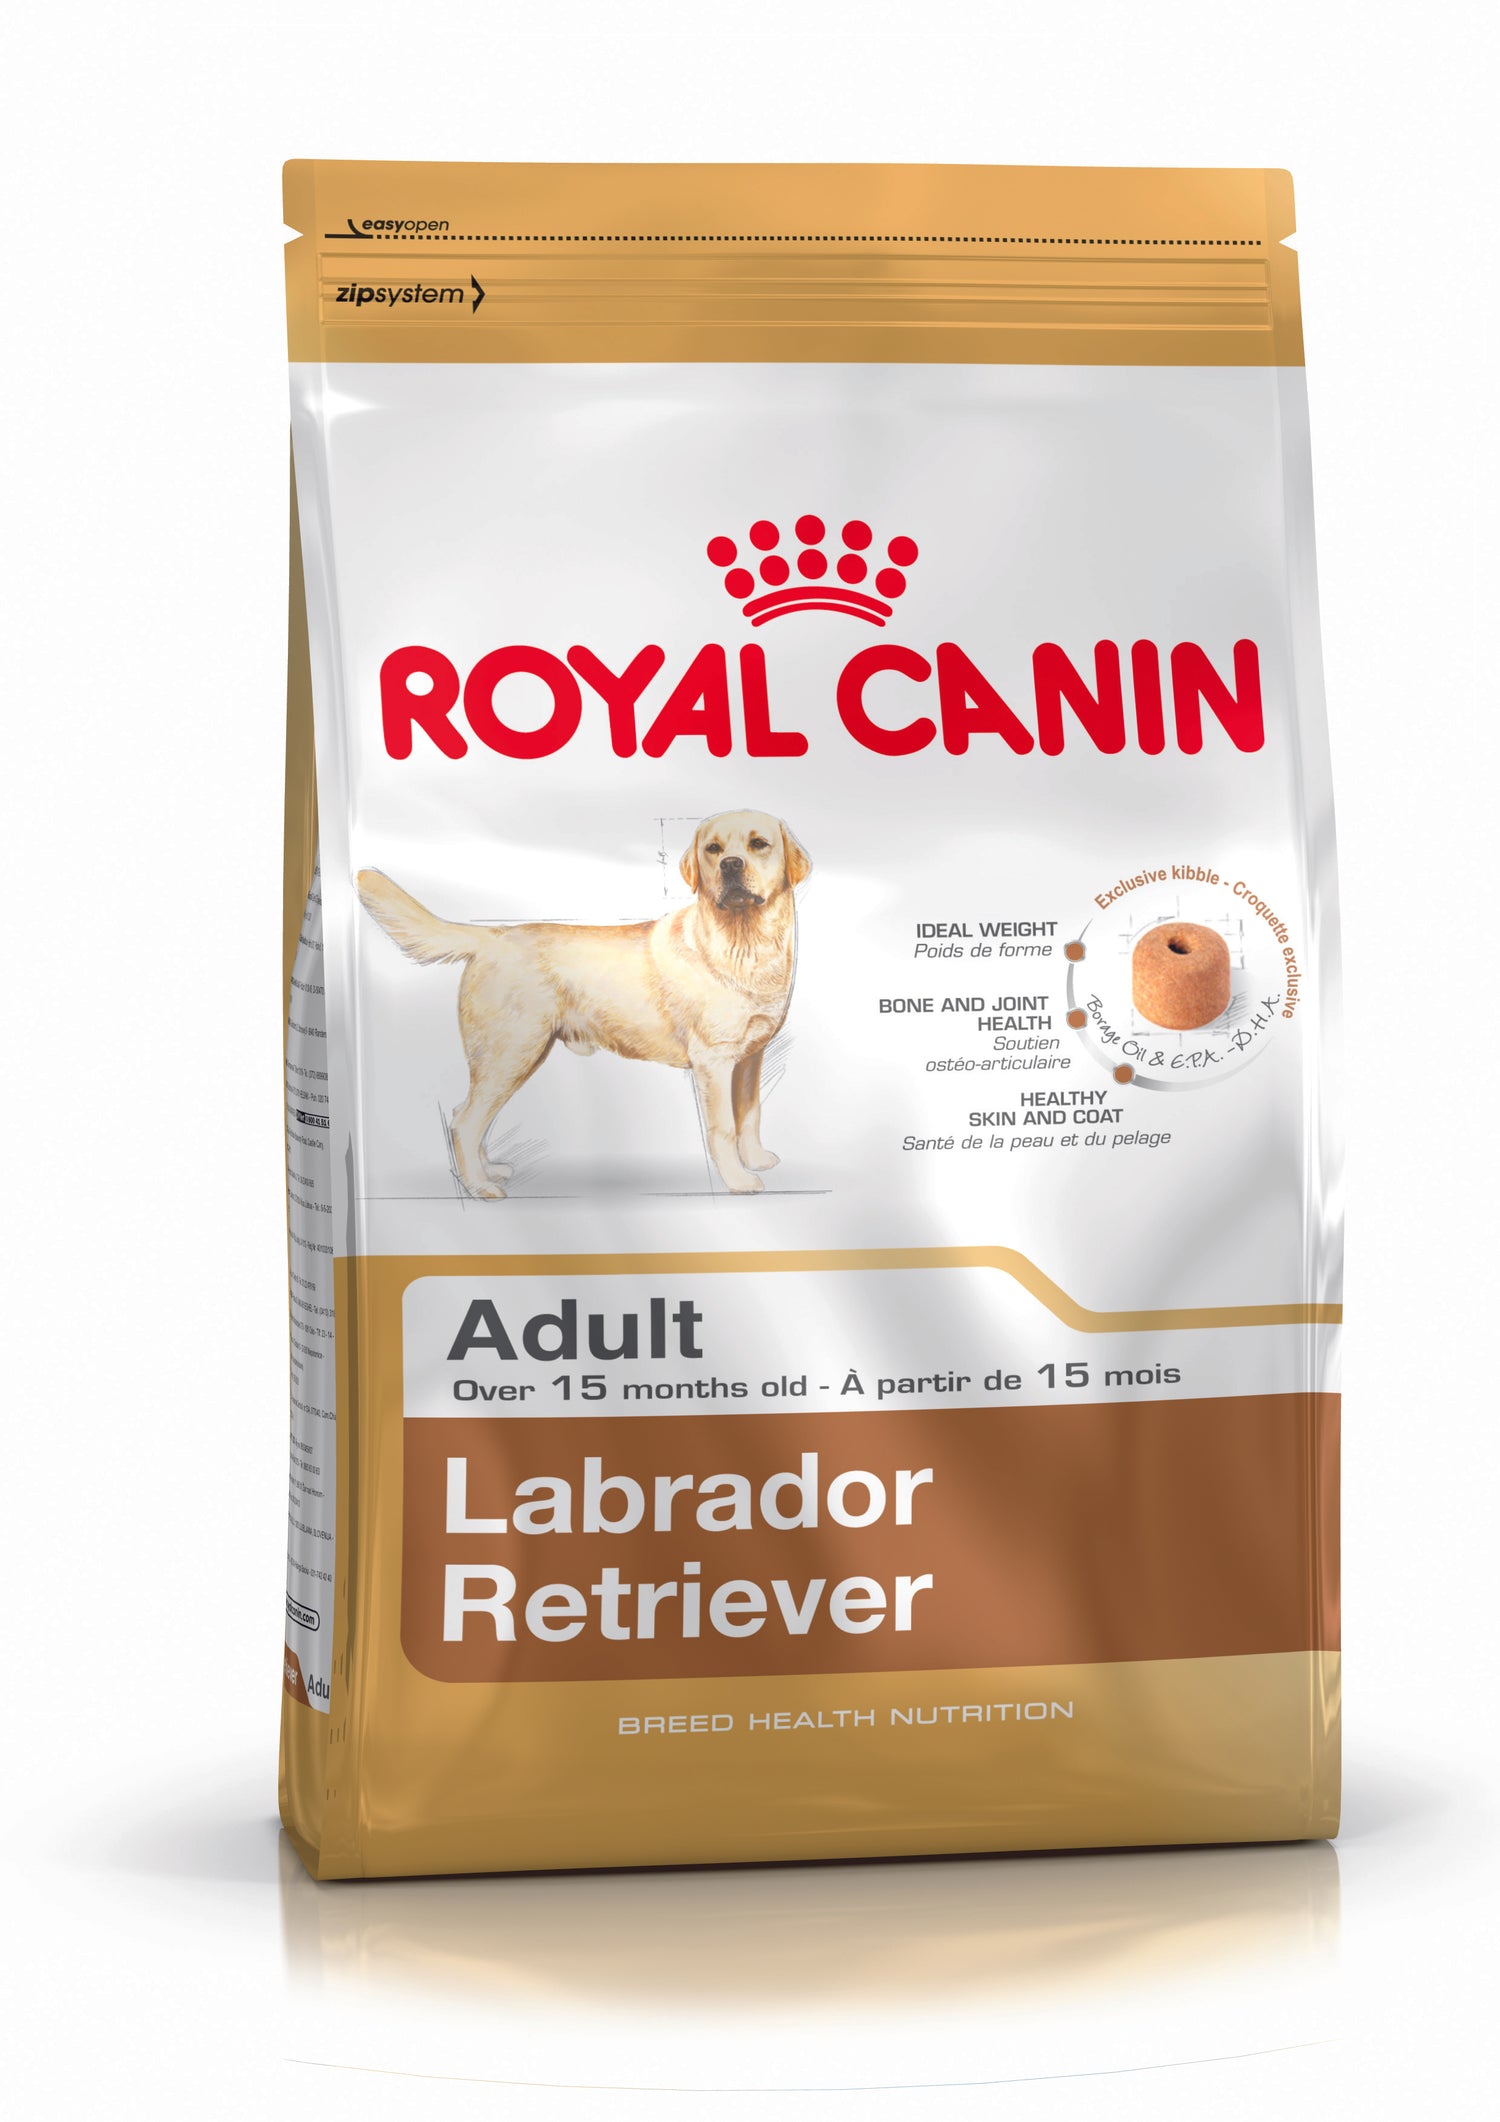 Royal Canin -Labrador Retreiver Dog Food 12Kg